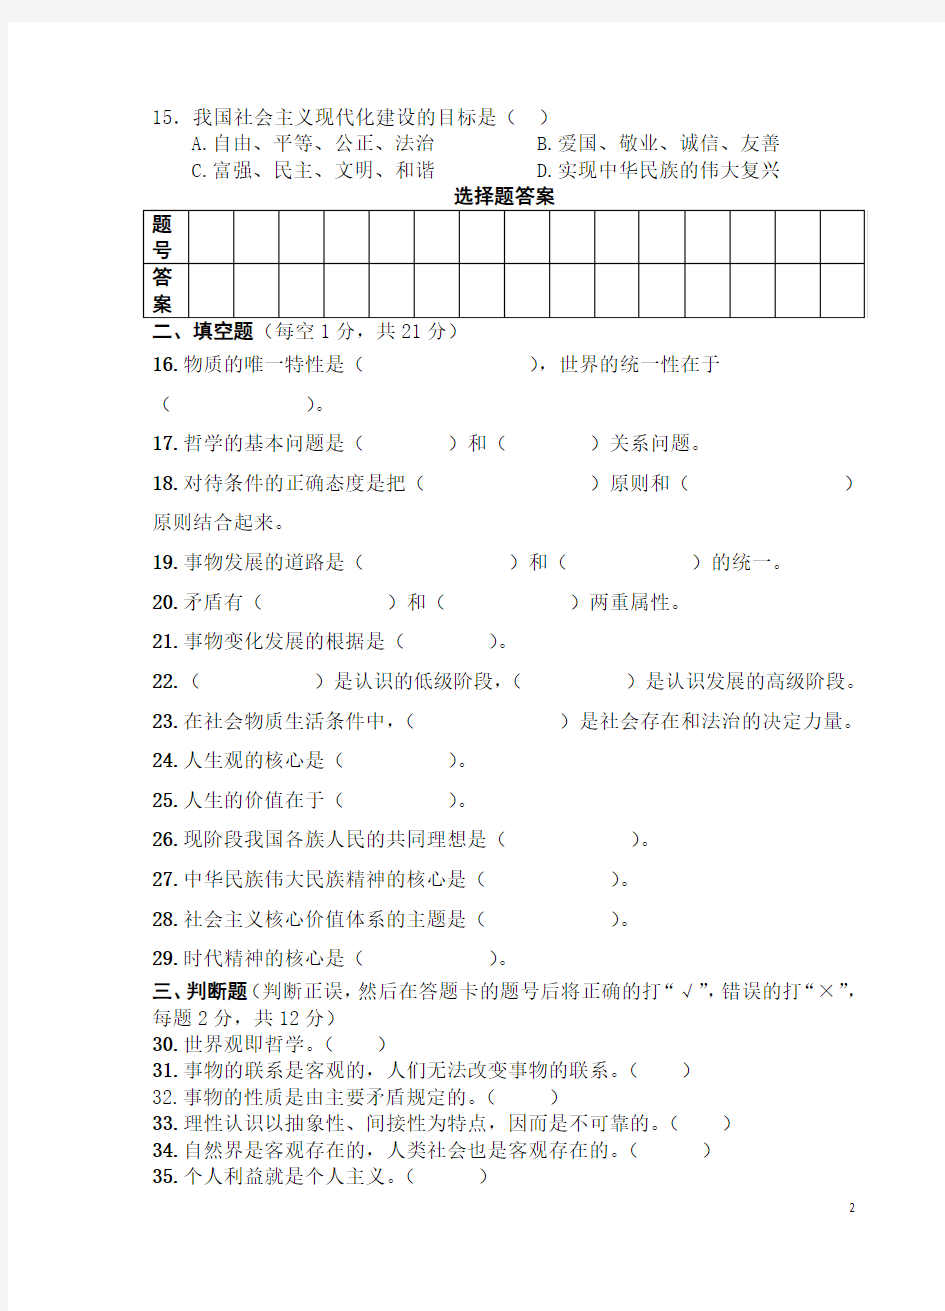 2015年云南省高等职业技术教育招生考试模拟考试